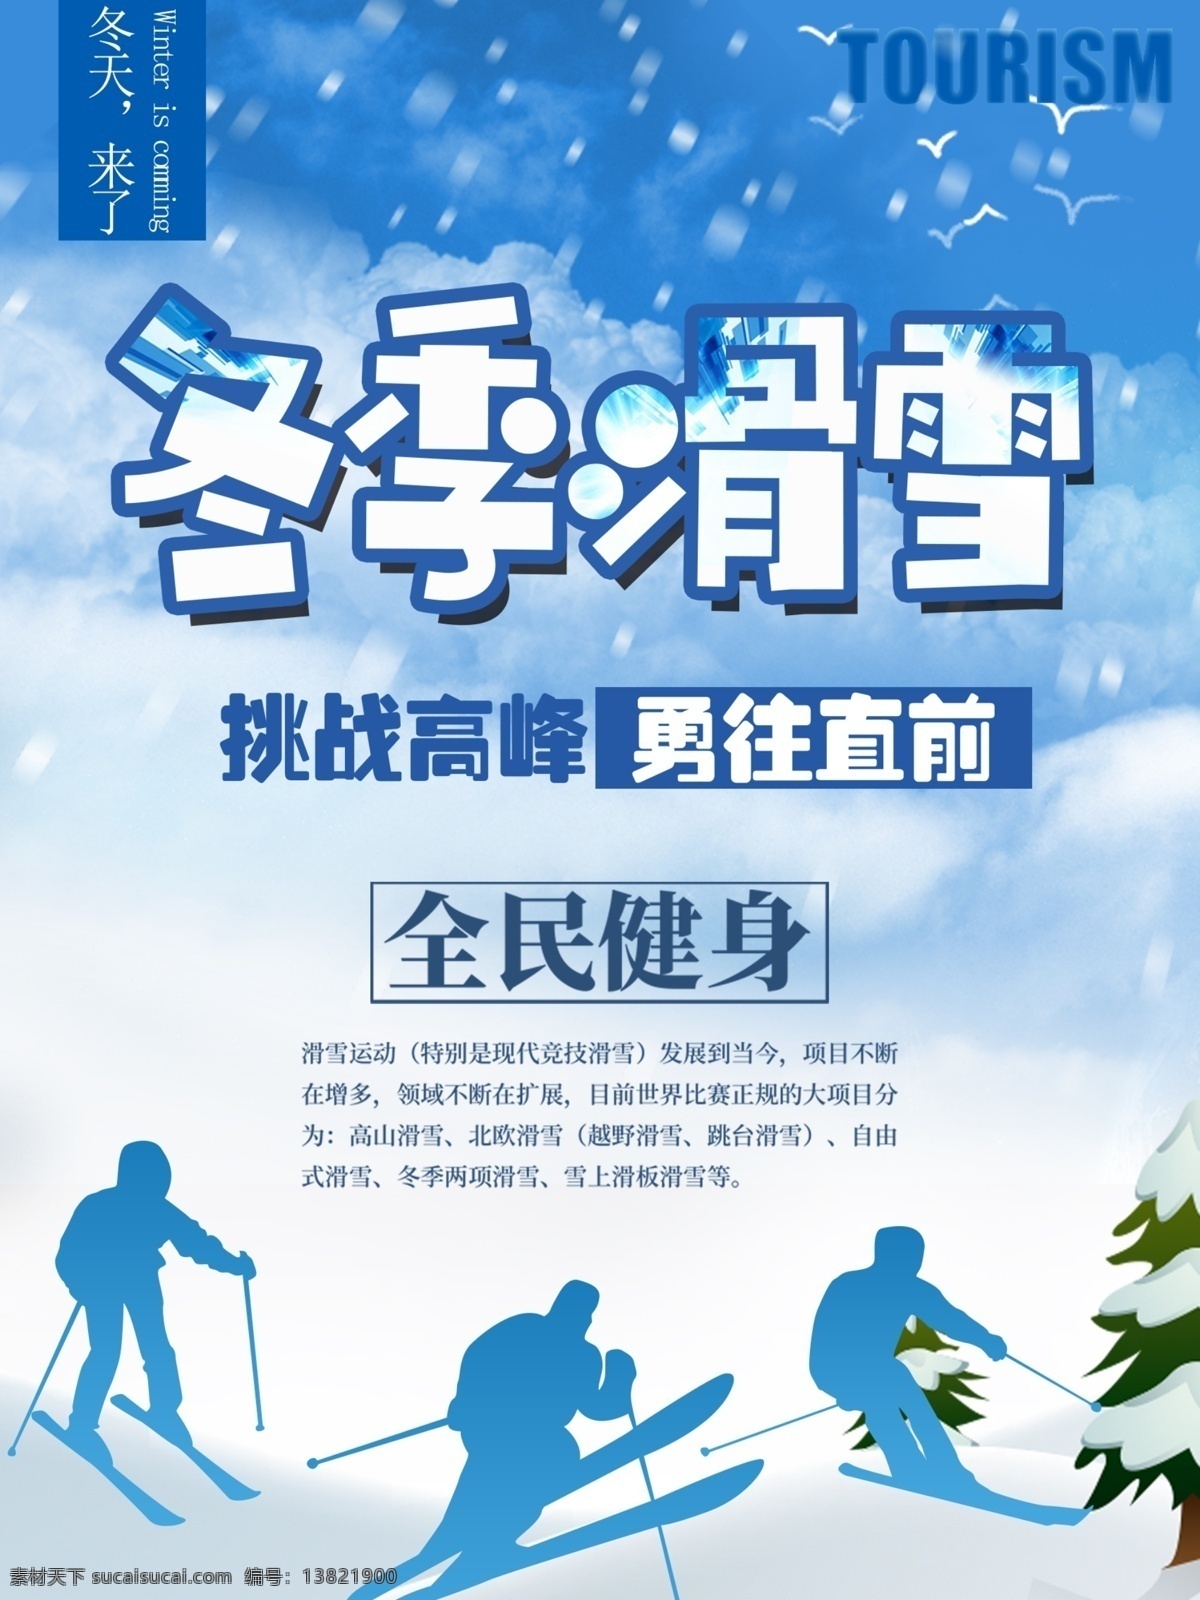 冬季 滑雪 原创 海报 商业 健身 运动 雪花 树 鸽子